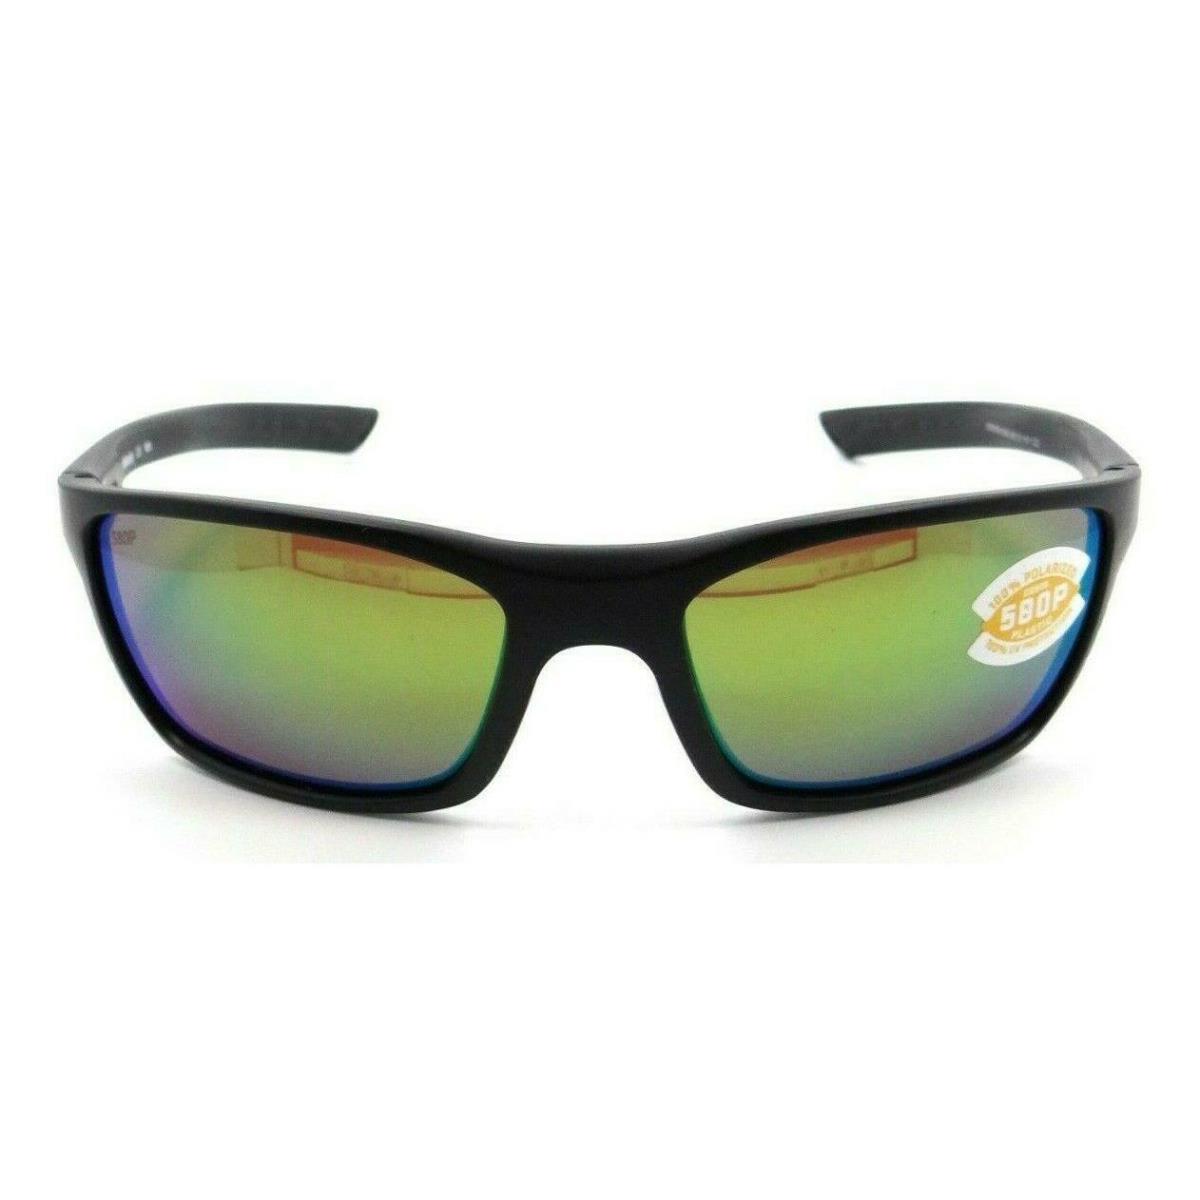 Costa Del Mar Sunglasses - Whitetip - Black/ Green Mirror 580P Lens - Frame: Green, Lens: Green